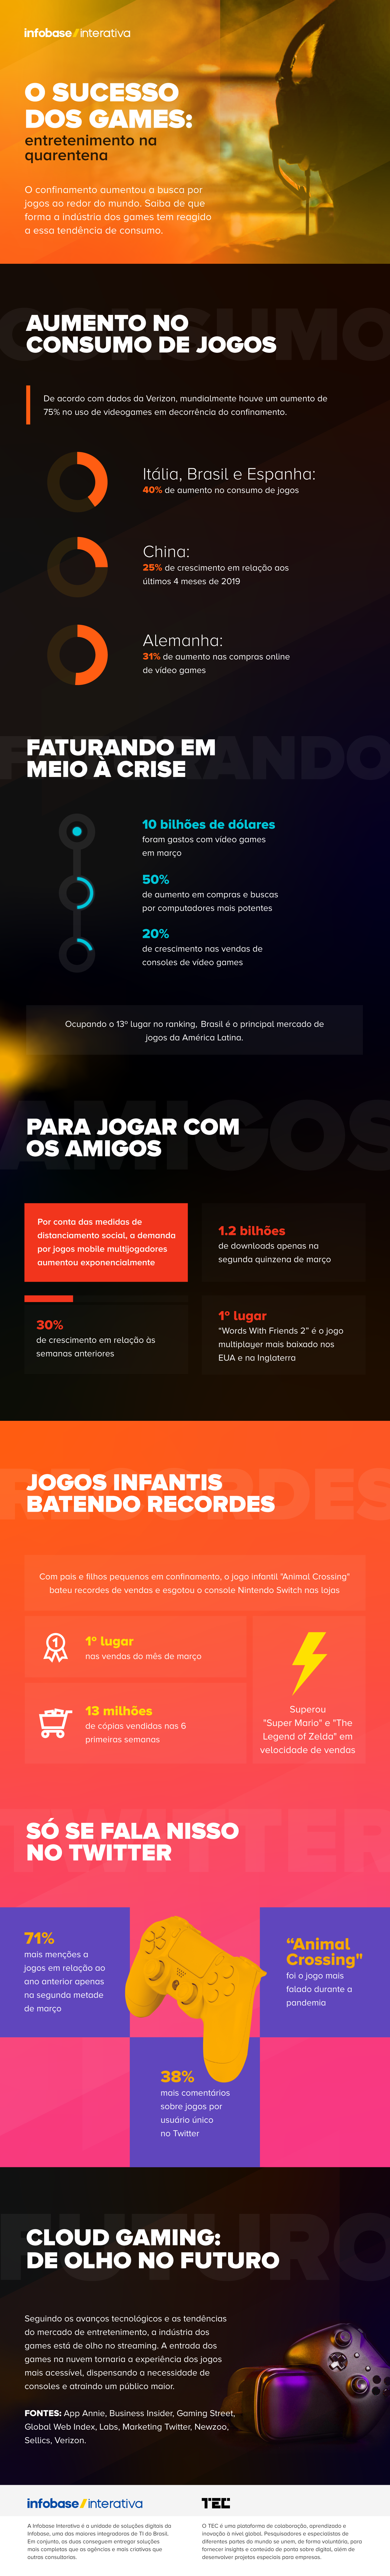 Infográfico mostra as 20 cidades mais gamers do Brasil